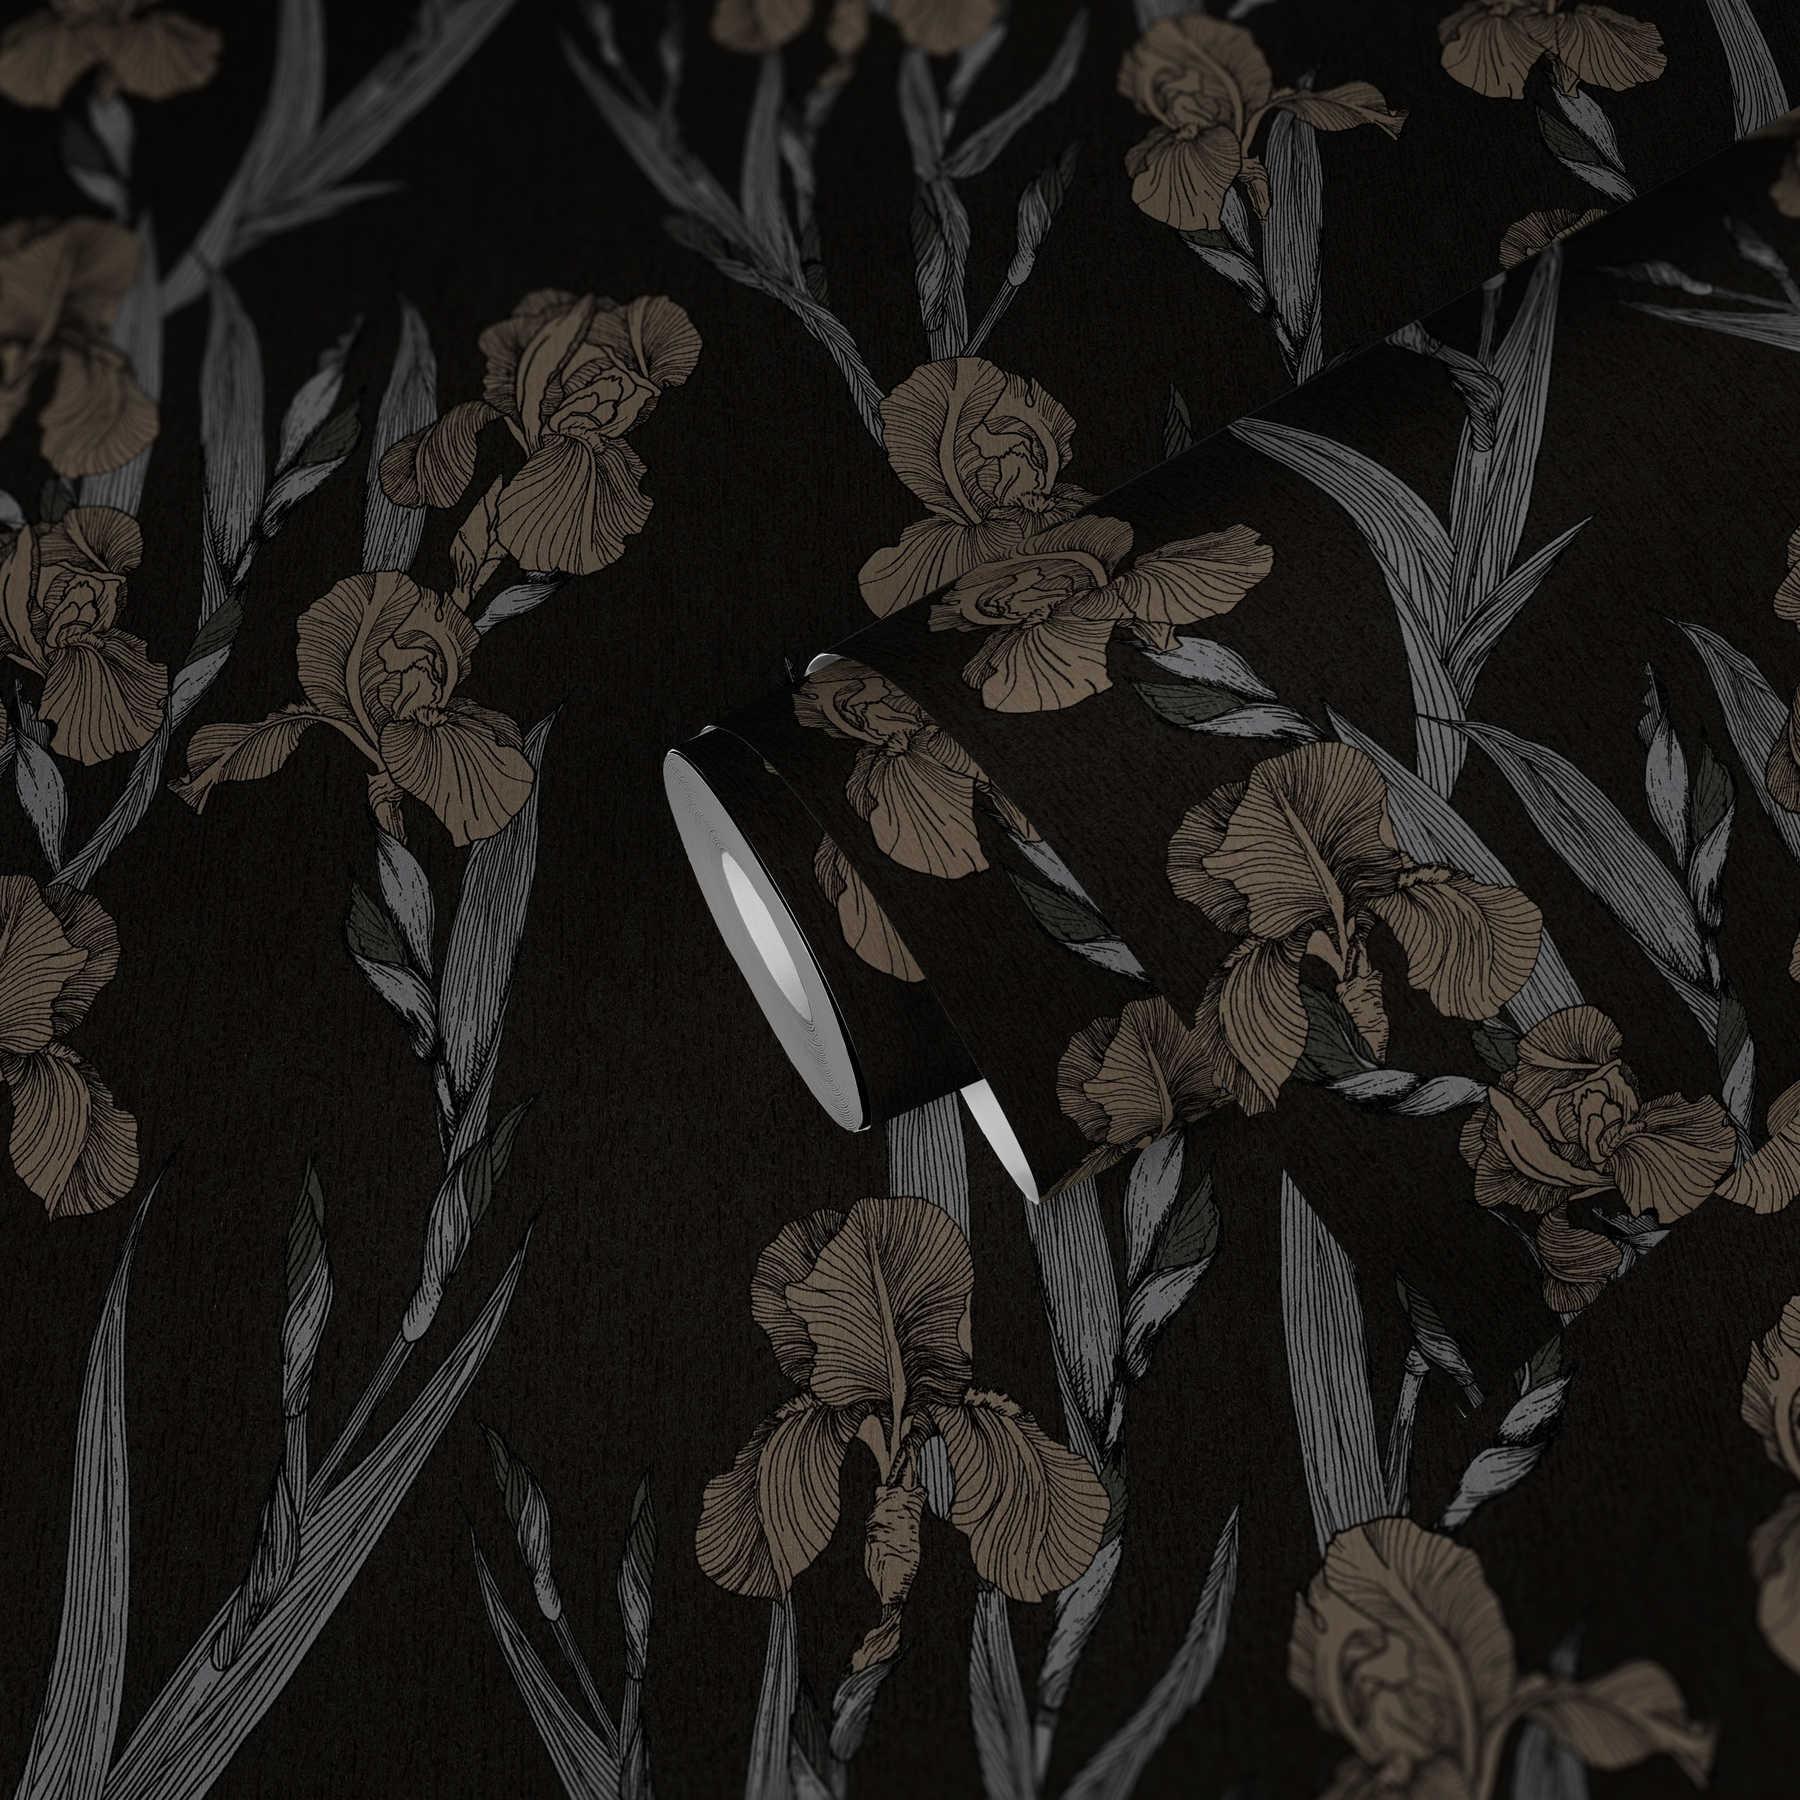             Bloemenpatroon behang met bloesems in tekenstijl - zwart, grijs, bruin
        